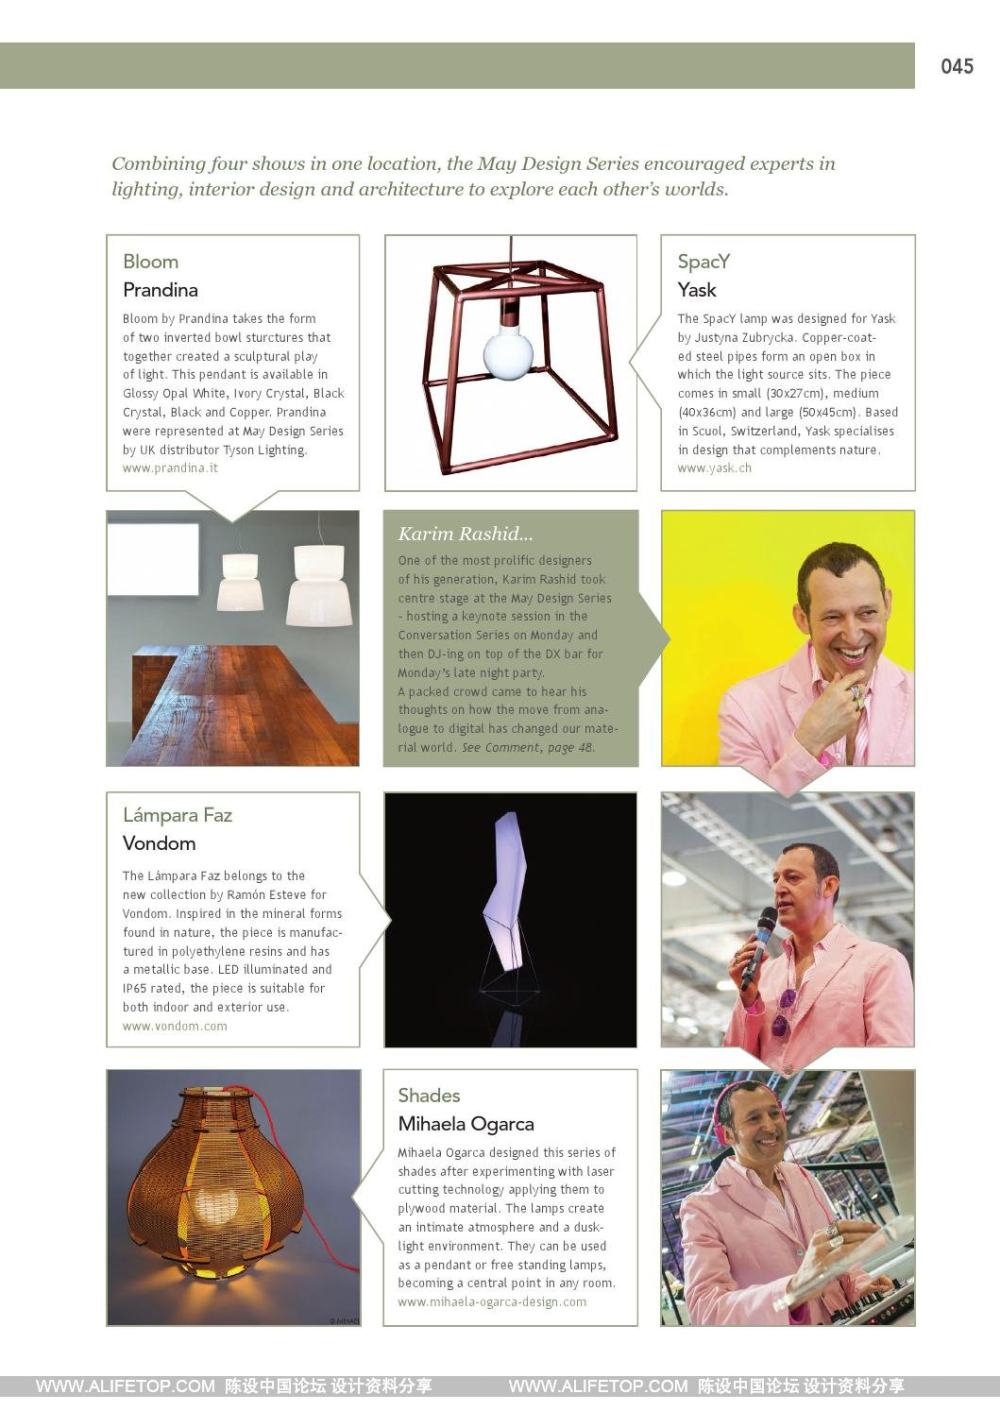 darc-3灯具照明设计杂志_darc-3灯具照明设计杂志 (45).jpg